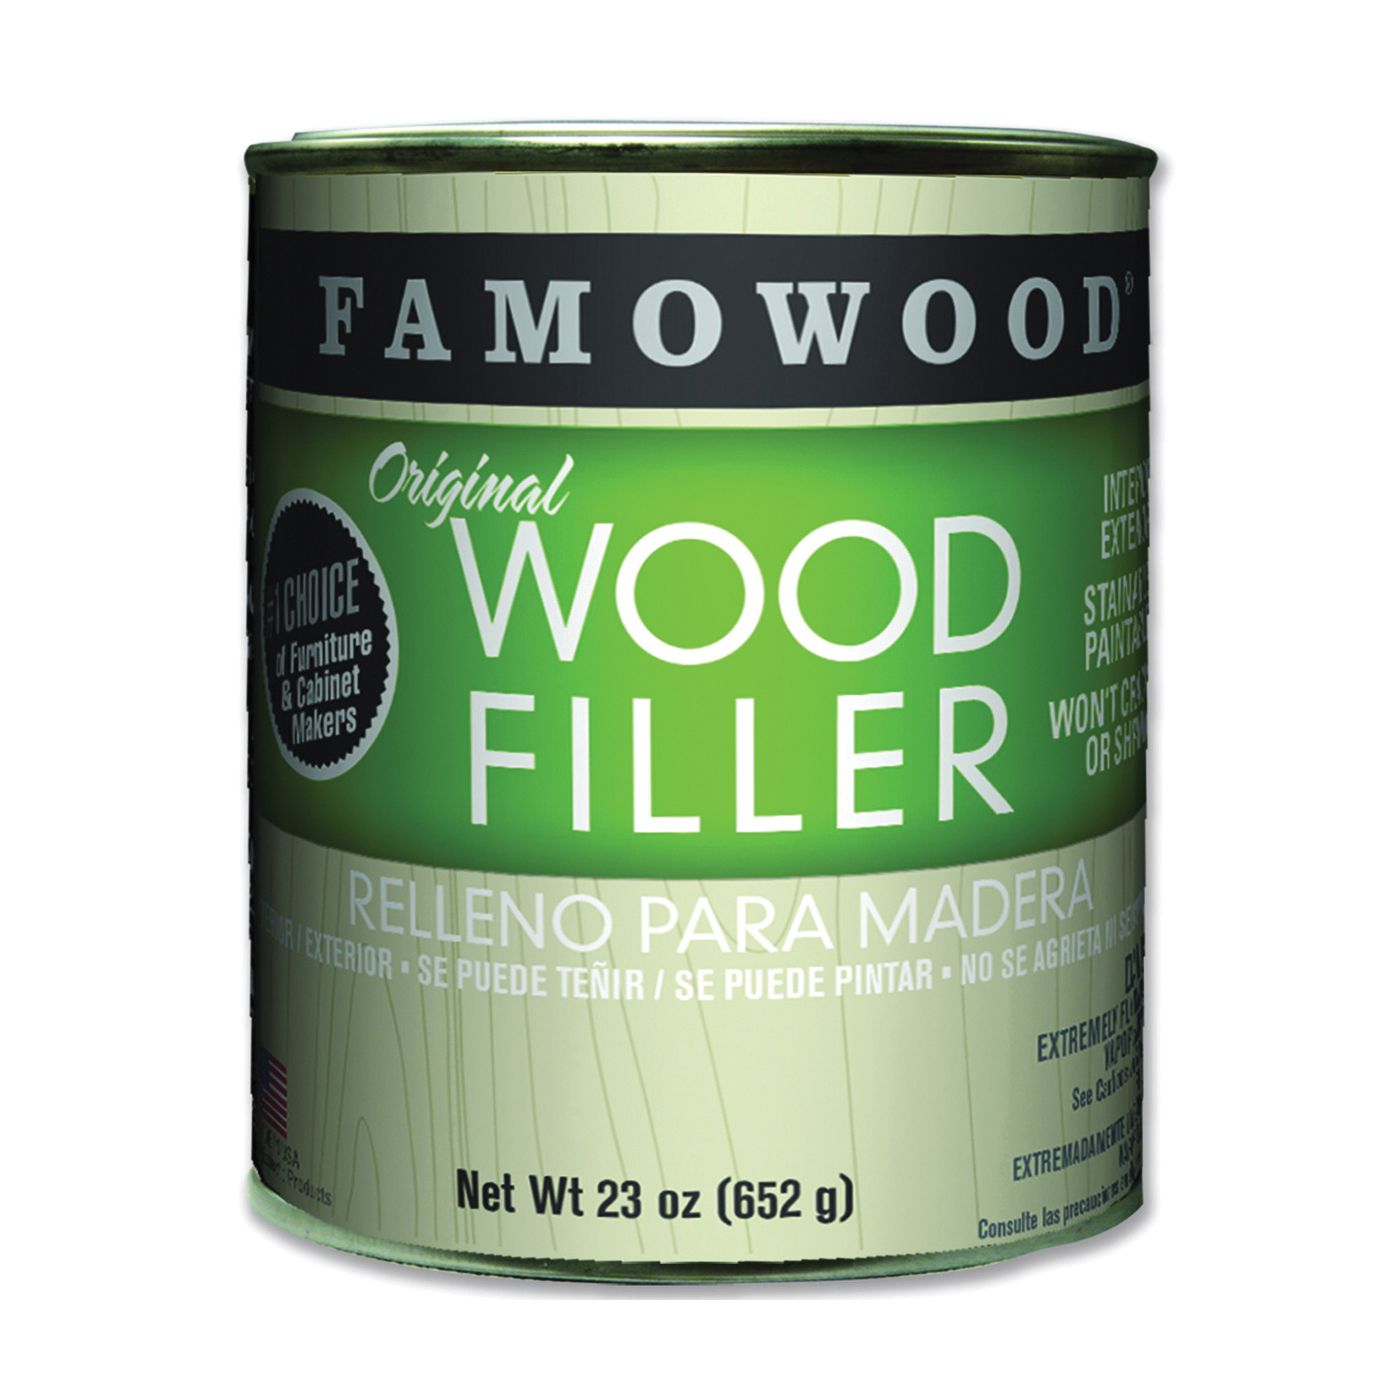 36021122 Original Wood Filler, Liquid, Paste, Mahogany, 24 oz, Can